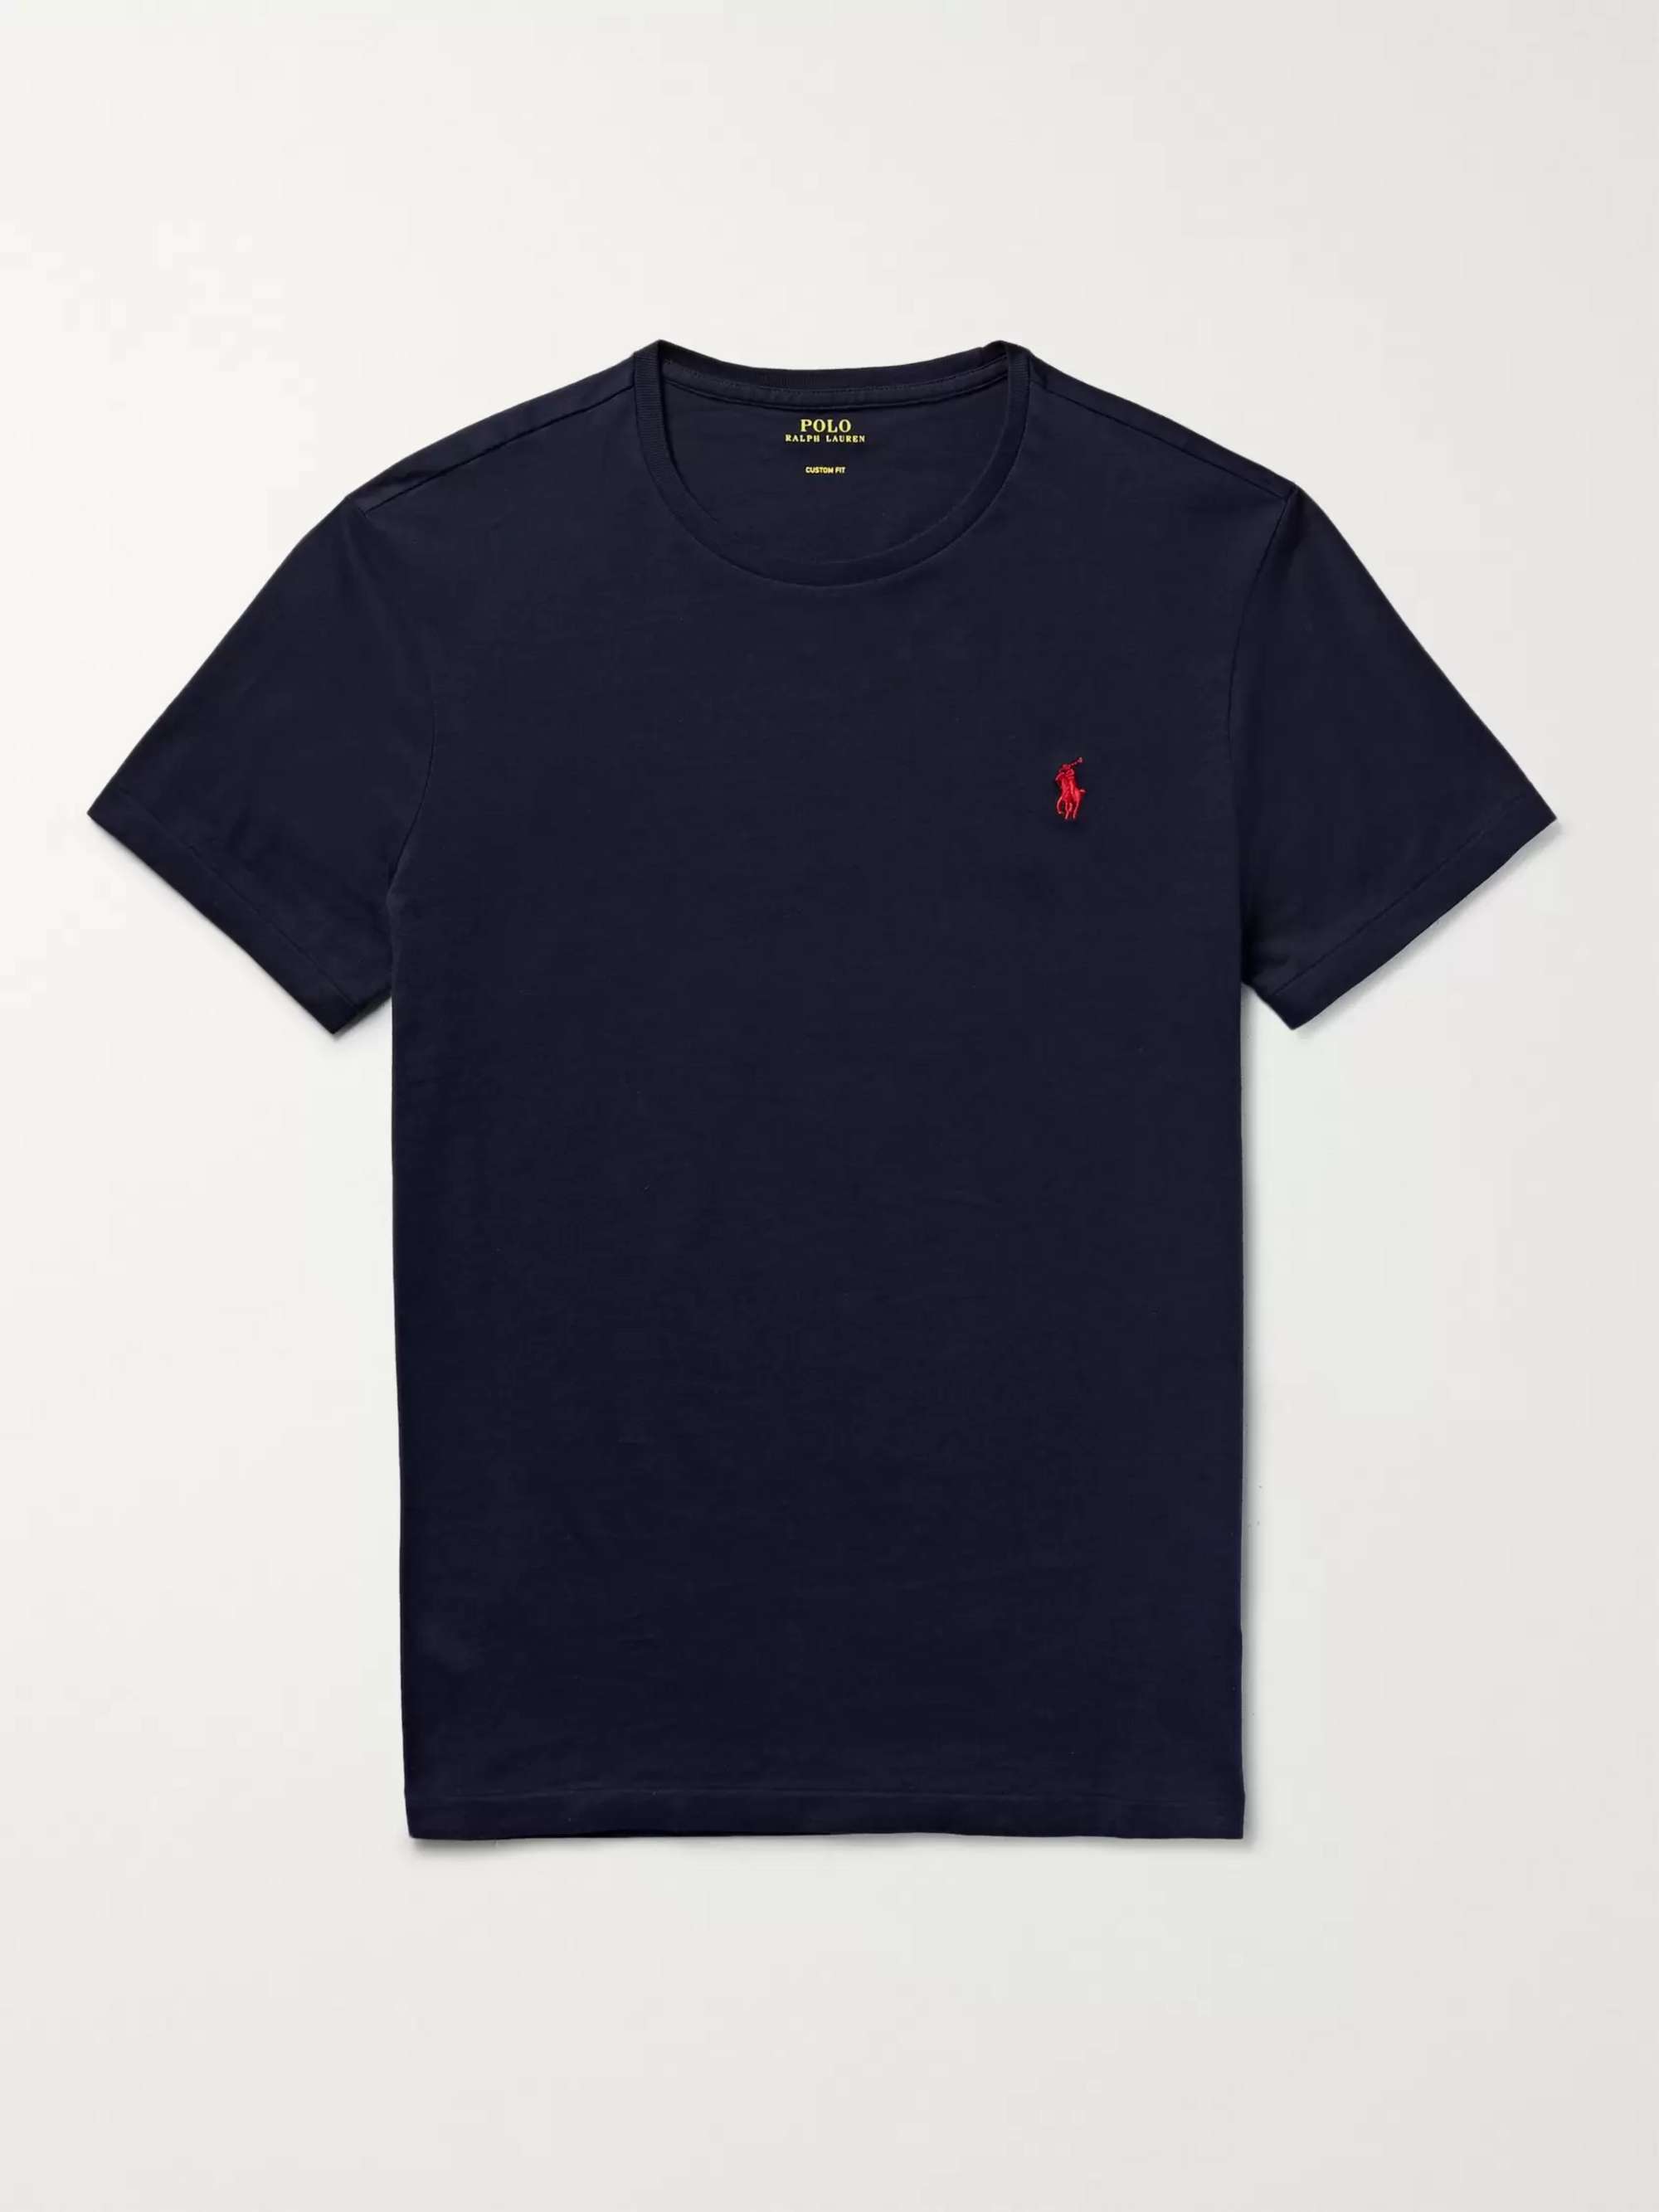 Navy Cotton-Jersey T-Shirt | POLO RALPH LAUREN | MR PORTER